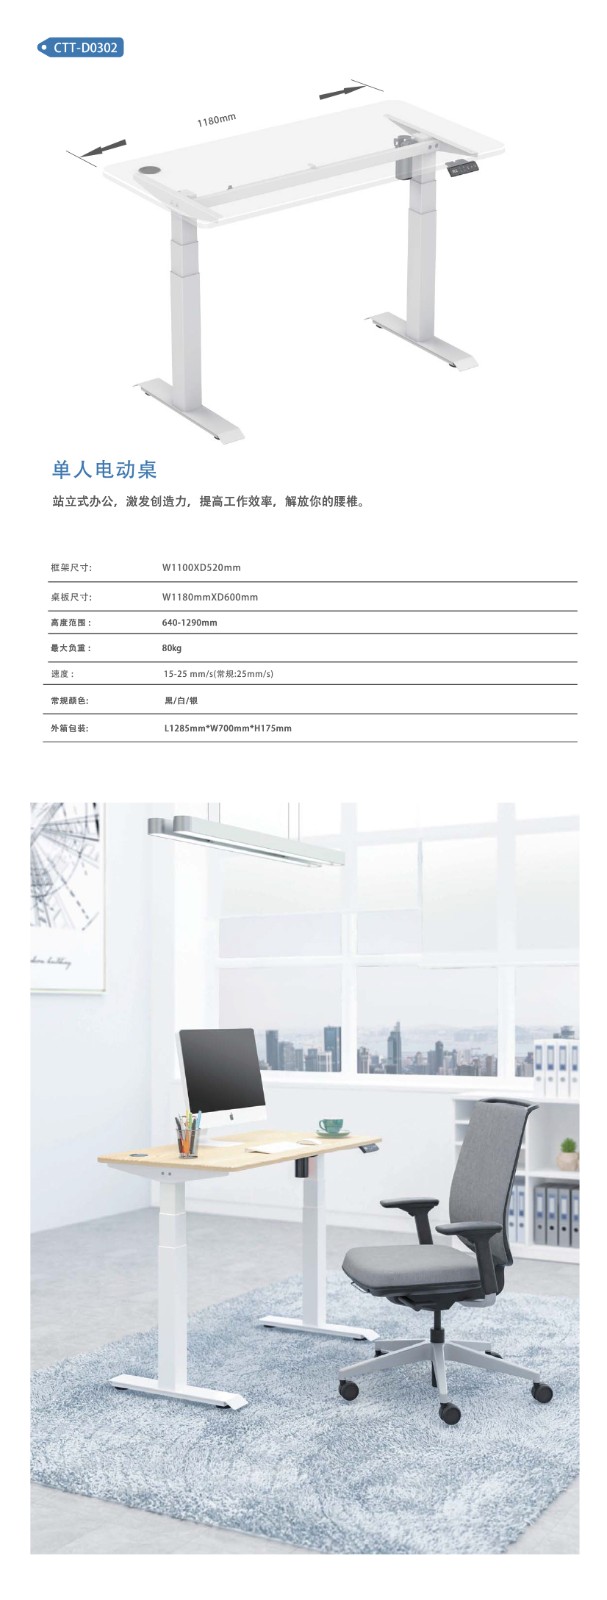 康拓产品图册中文-7-单电机升降桌CTT-D0302.jpg